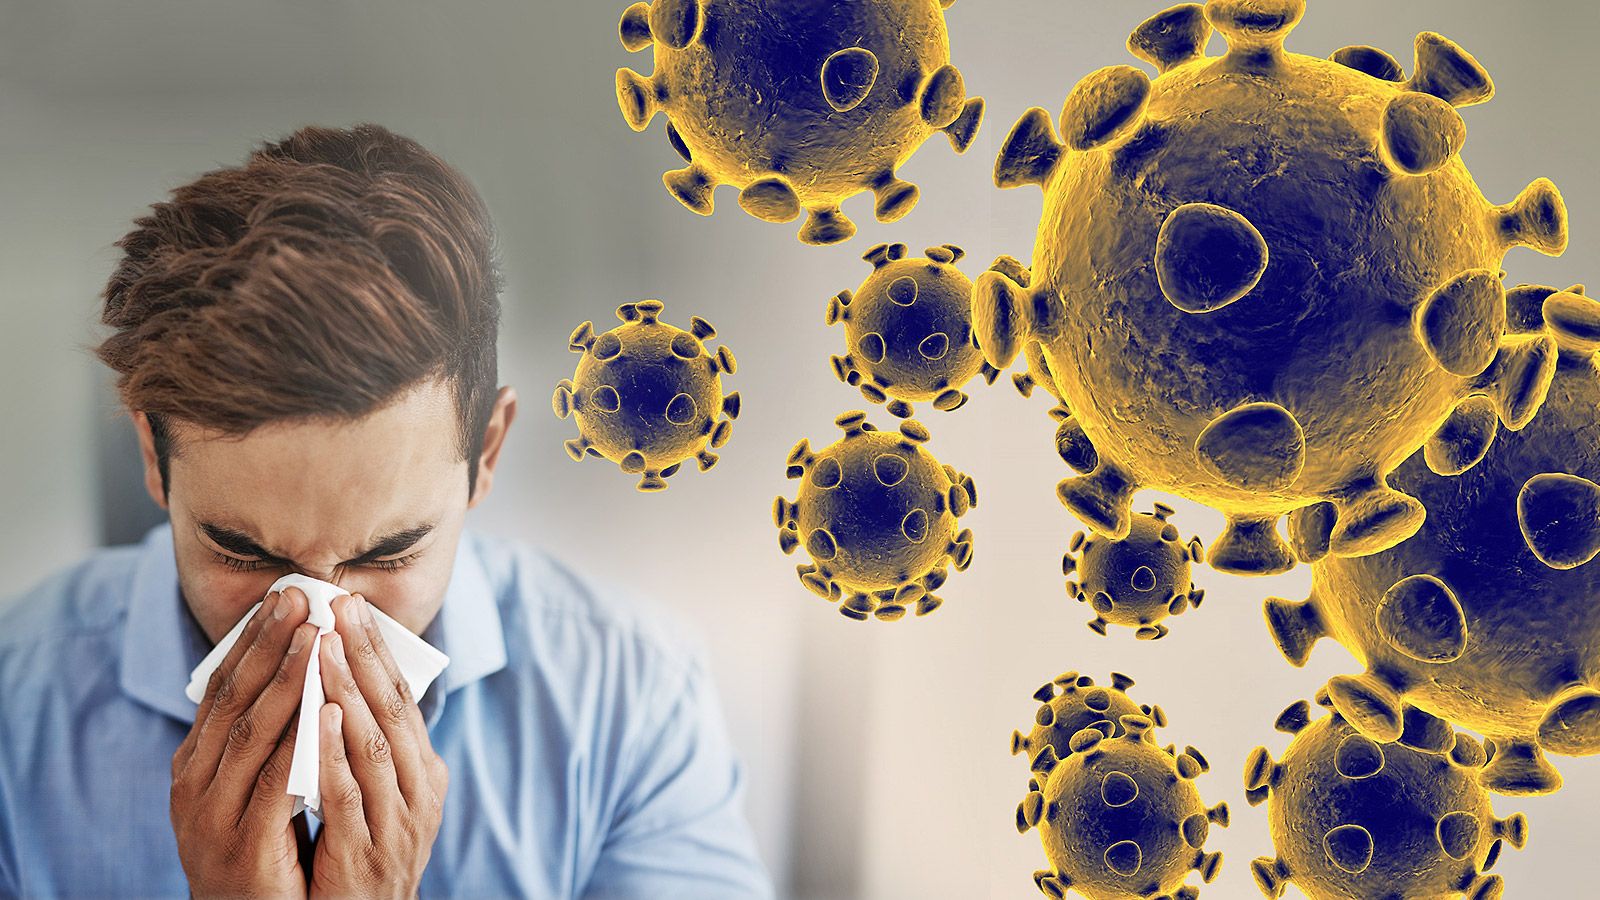 “Virusa təsir edən konkret dərman yoxdur” - İnfeksionist